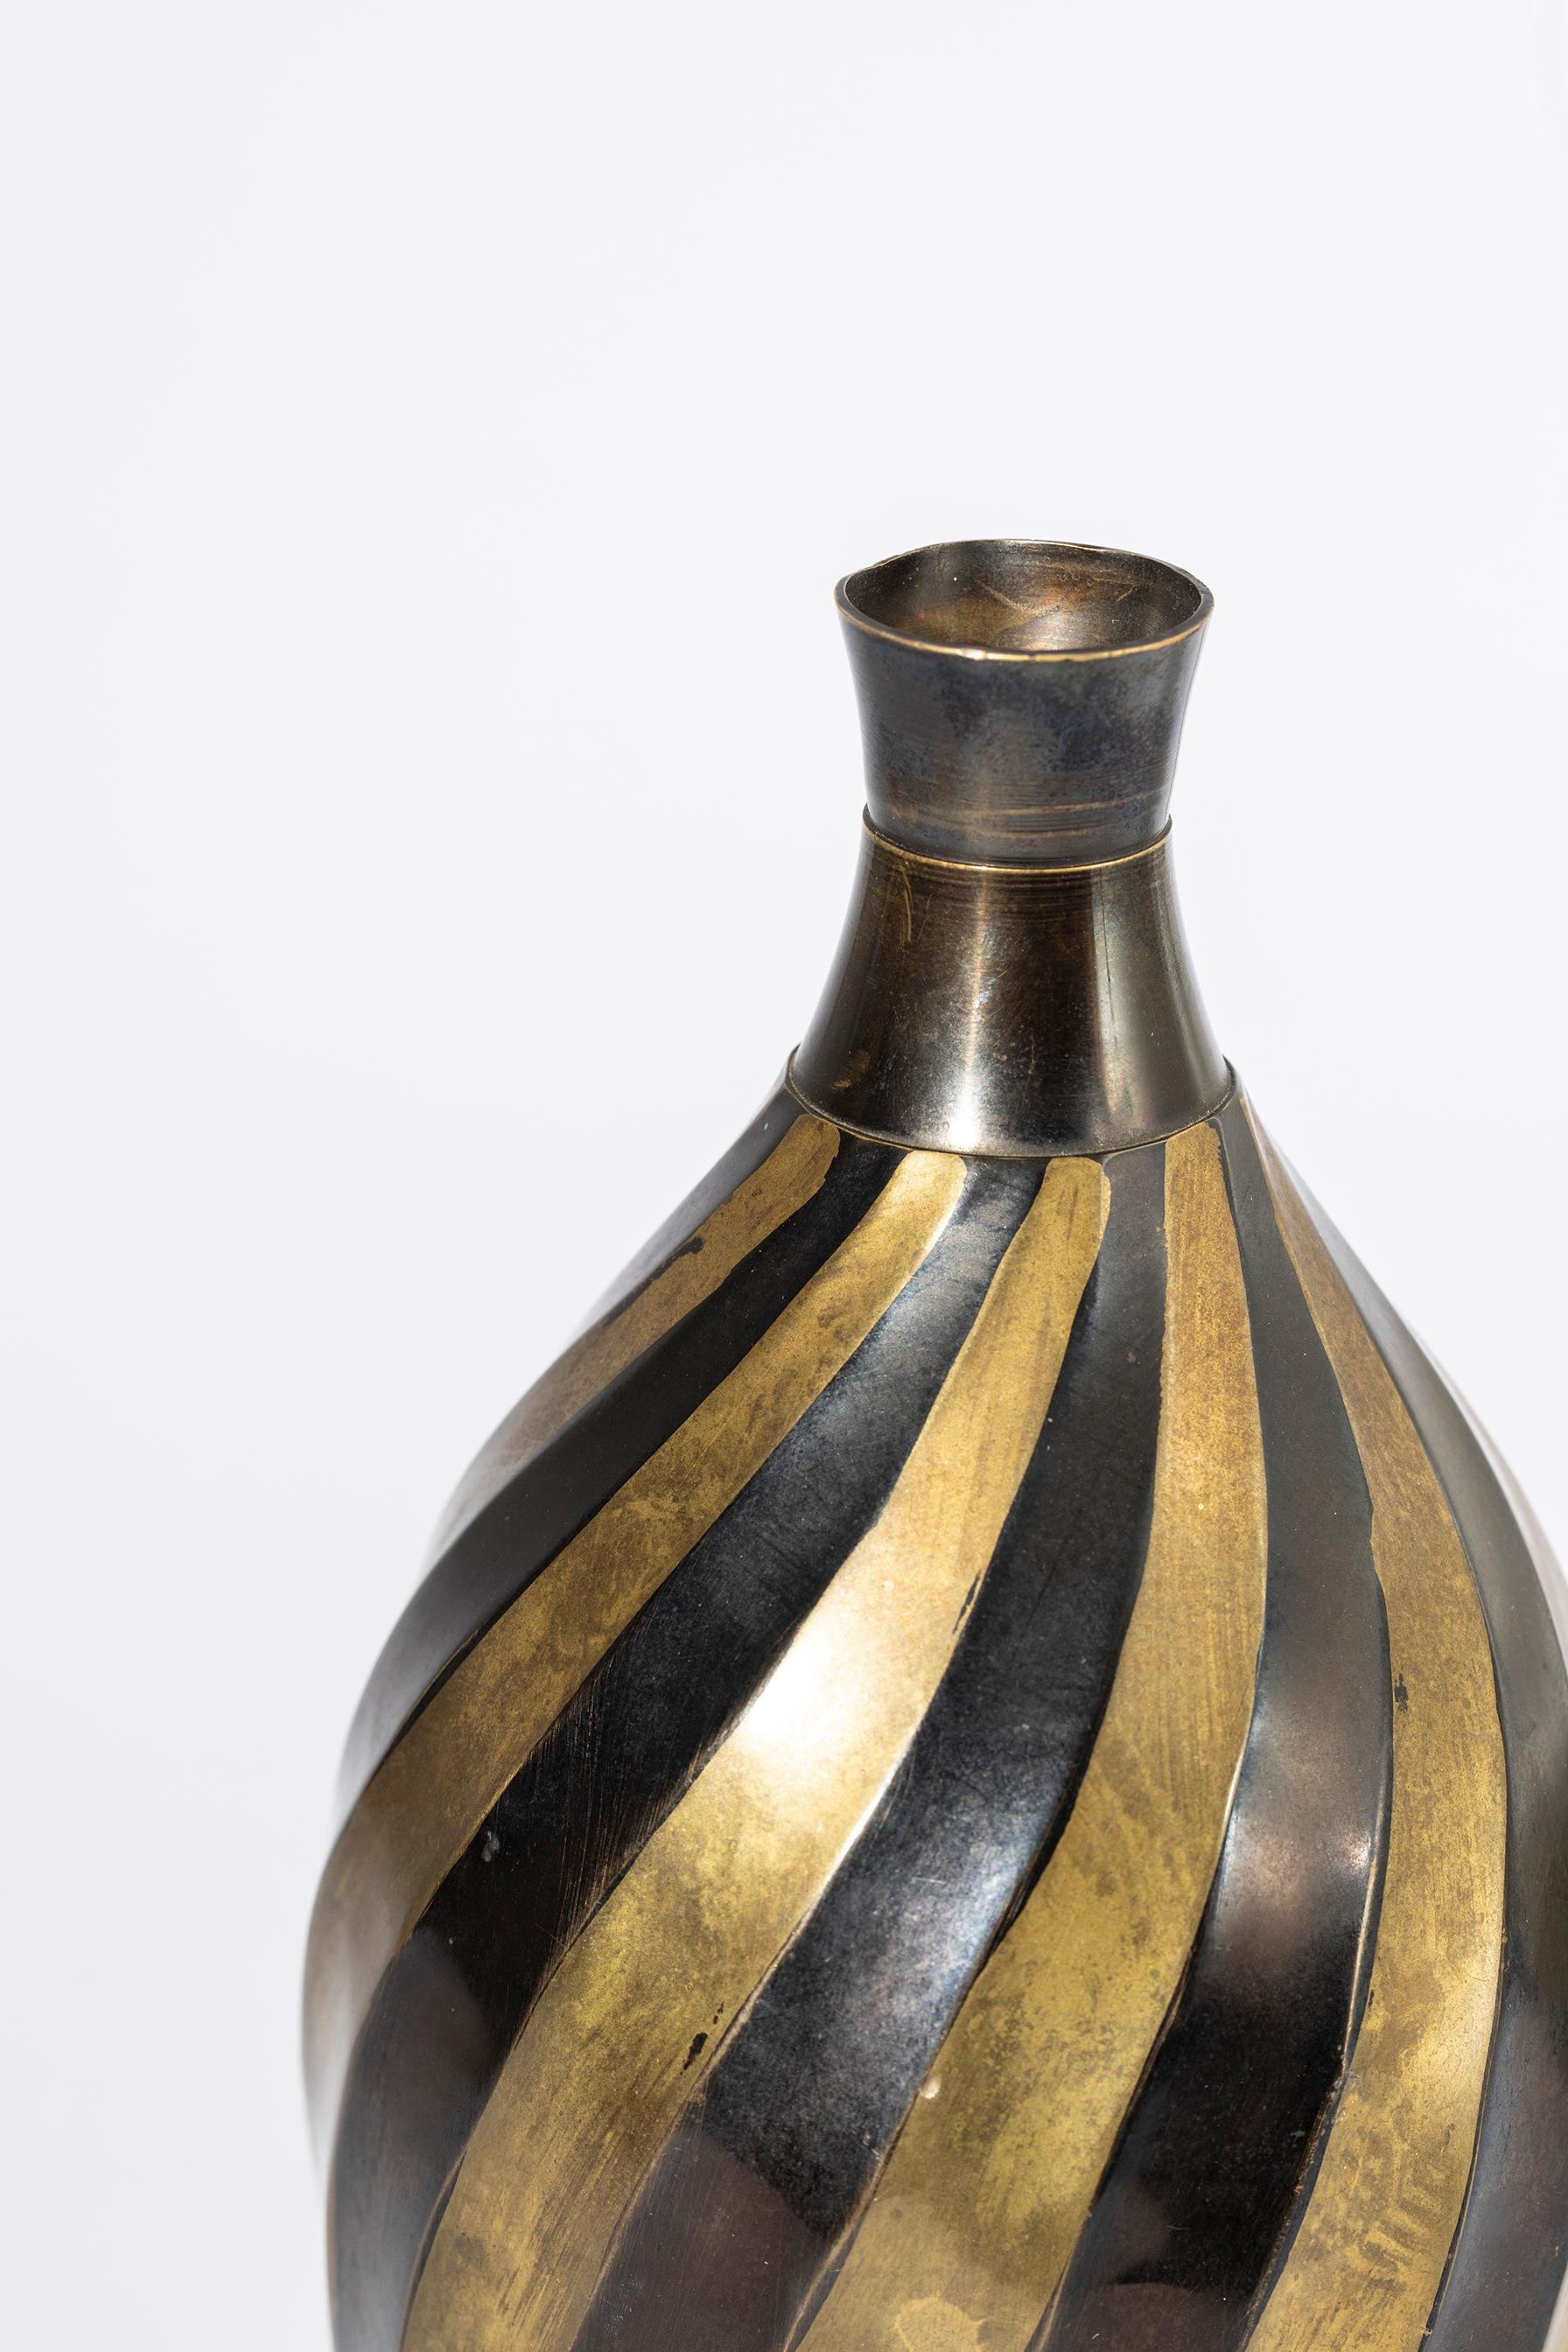 Messingvase, geprägt, mit abwechselndem Rautendekor in schwarzer Farbe emailliert. Die Form und die Verarbeitung der geometrischen Prägung verleihen der Vase die Kraft und Dynamik des Deco-Stils. 